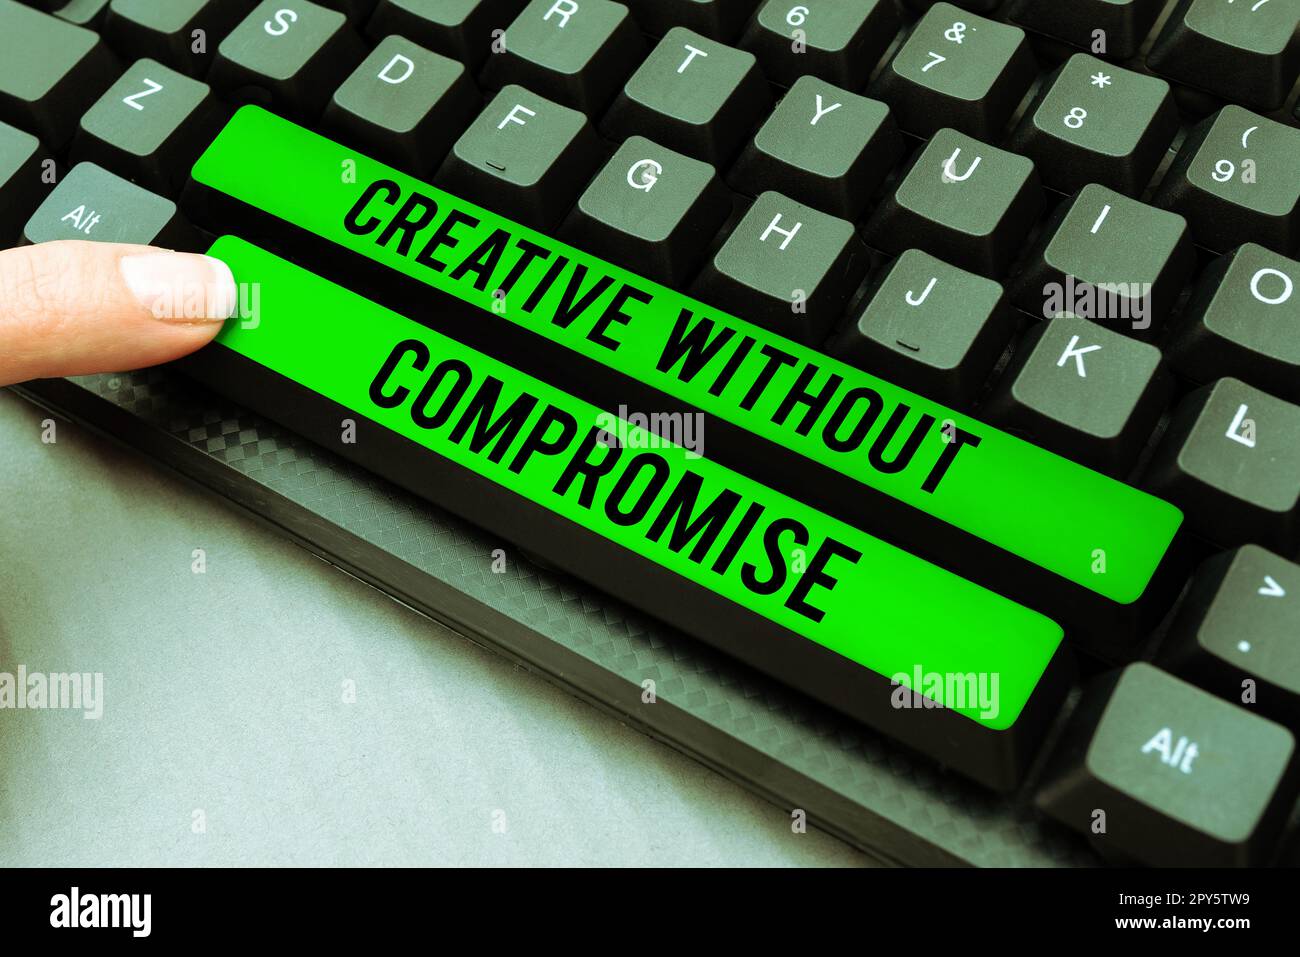 Konzeptionelle Beschriftung Kreativ ohne Kompromisse. Internet-Konzeptionsprozess der gezielten Erzeugung visueller Bilder Stockfoto